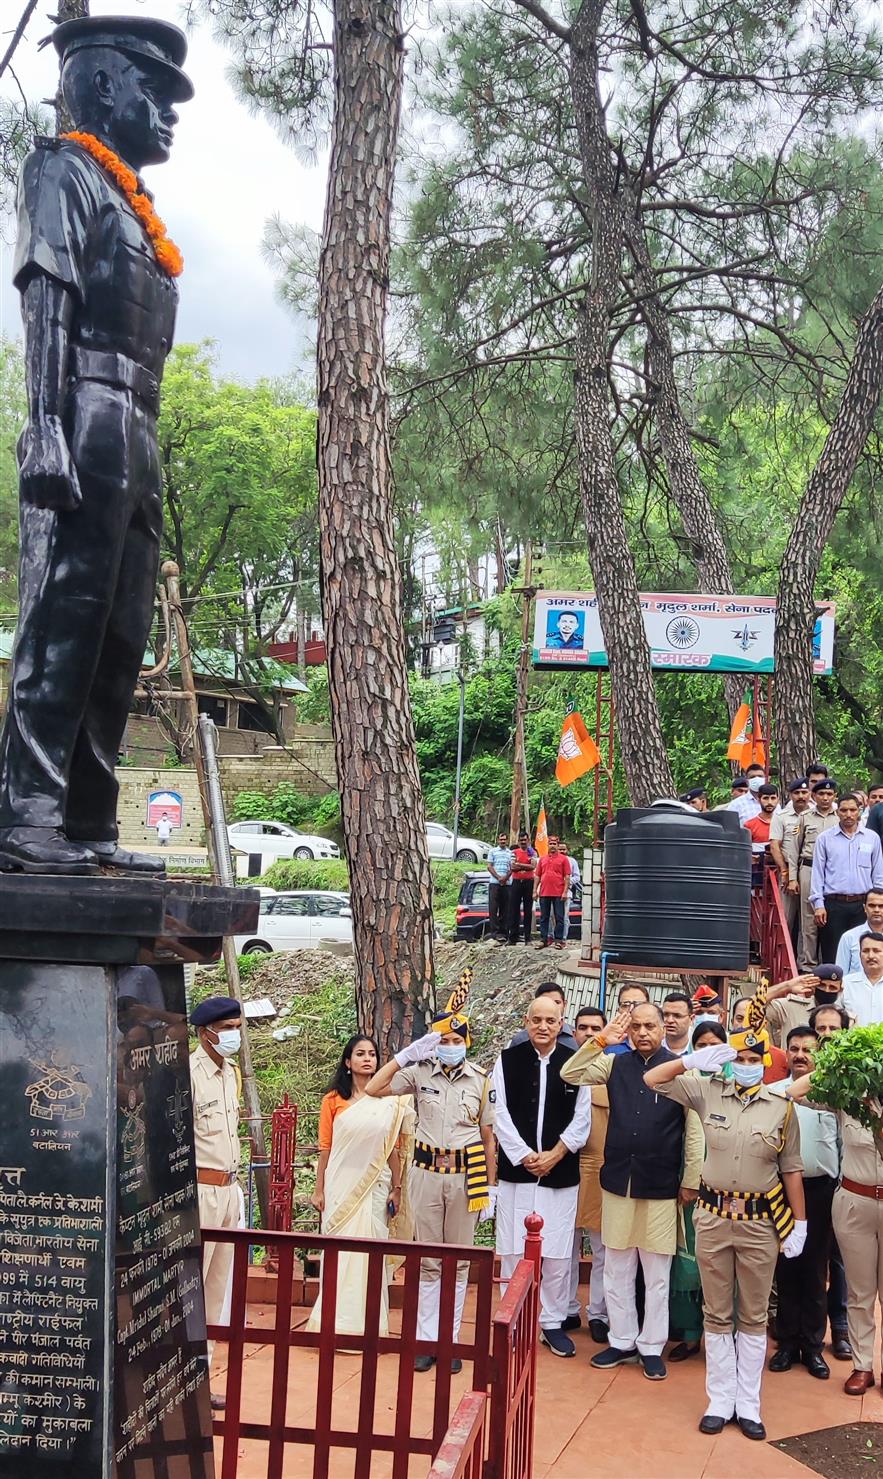 War memorial to be built at Rs 70 lakh: Himachal CM